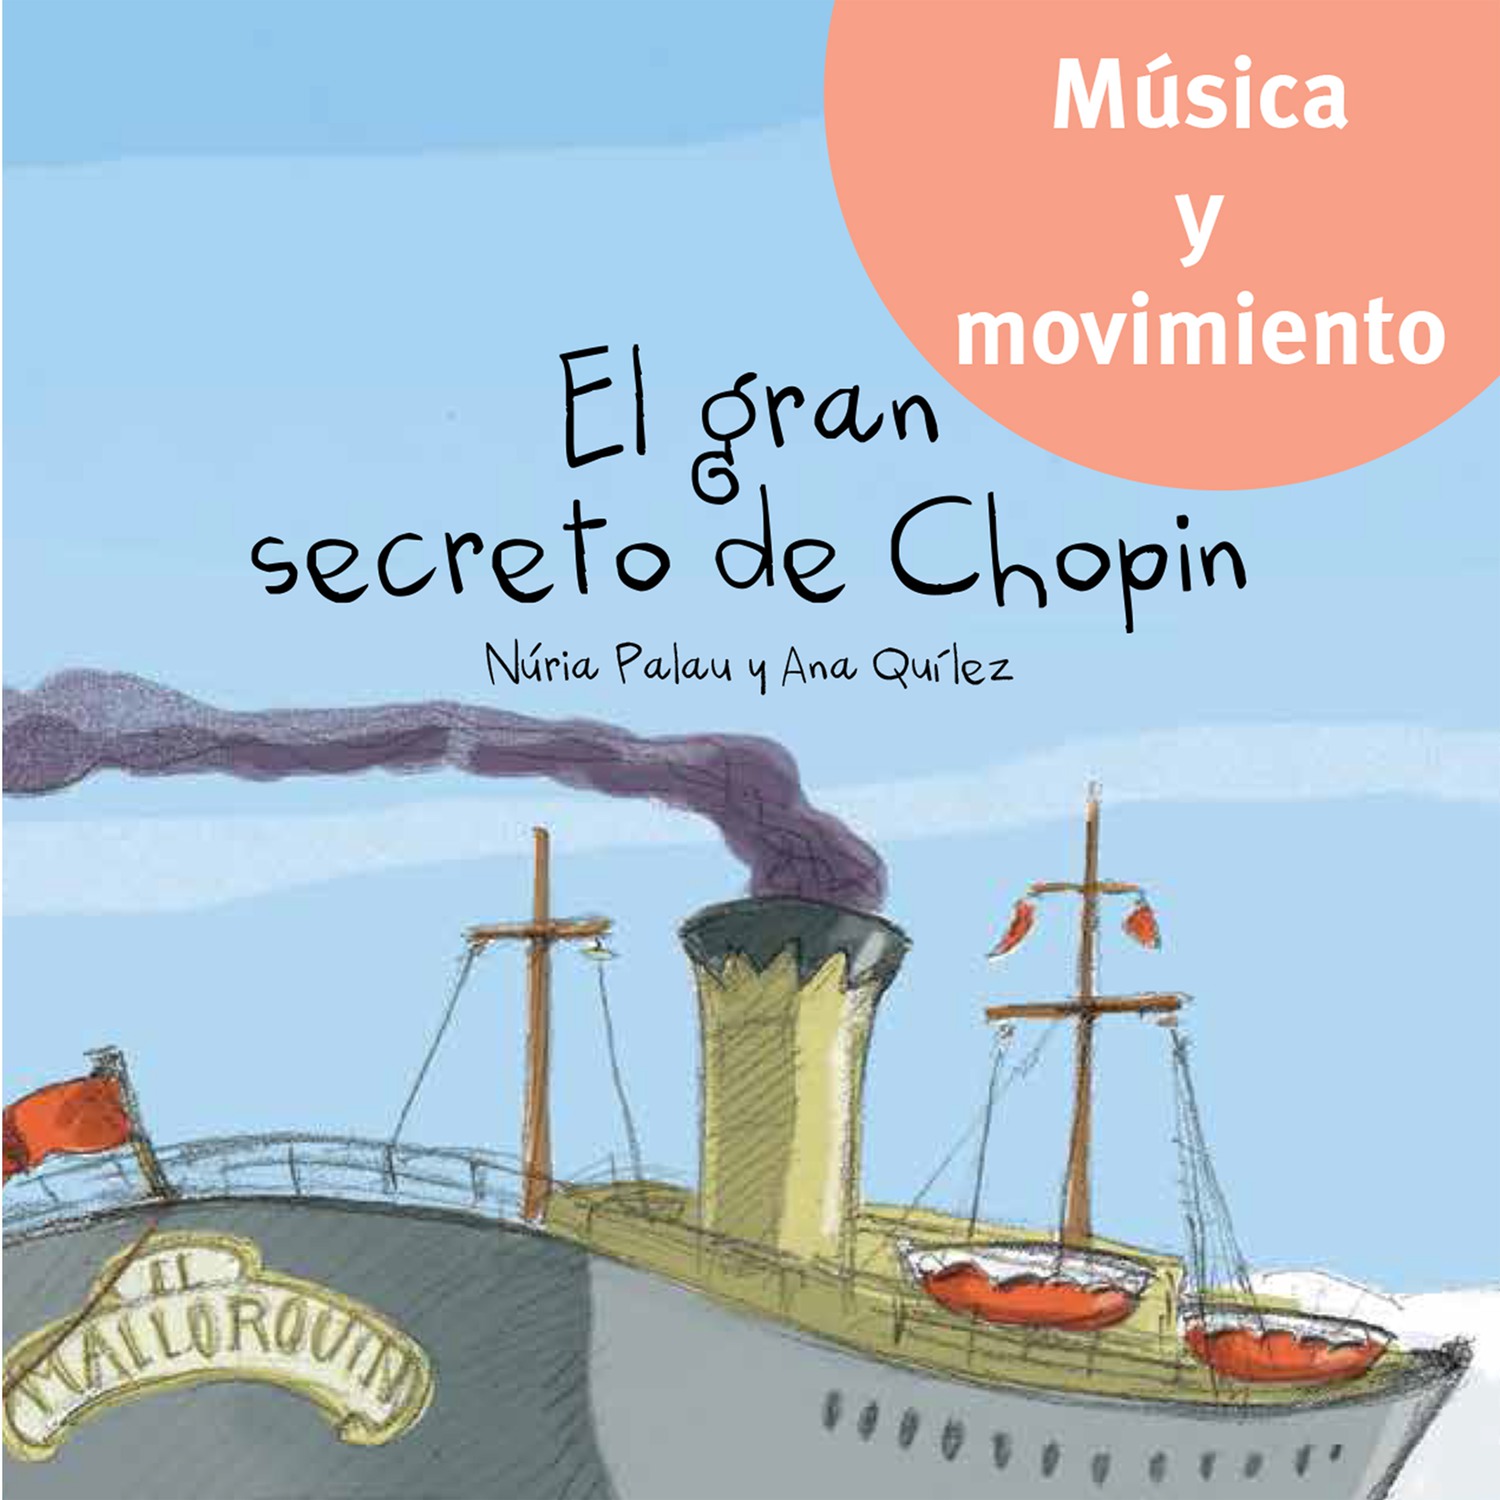 El secreto de Chopin